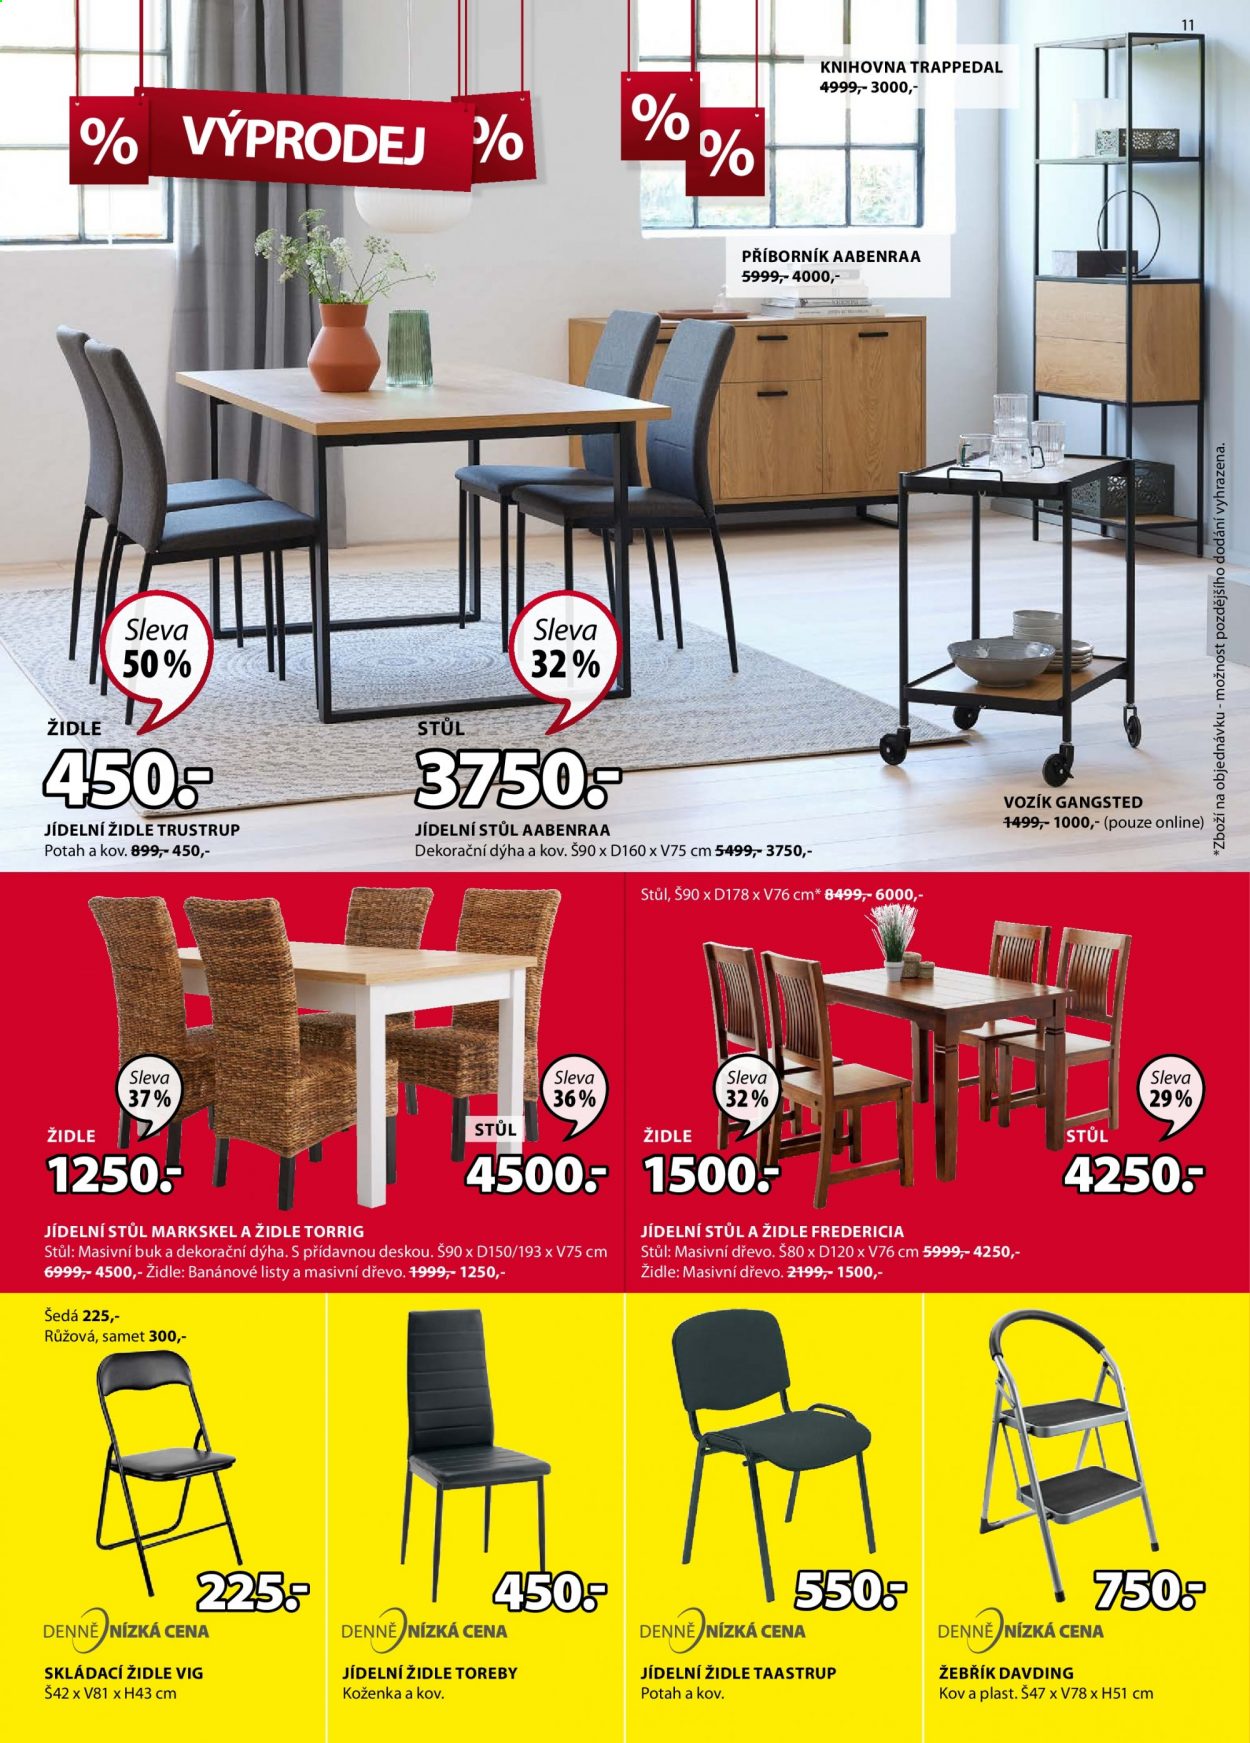 thumbnail - Leták JYSK - 14.1.2021 - 27.1.2021 - Produkty v akci - příborník, jídelní stůl, stůl, jídelní židle, židle, skládací židle, knihovna, žebřík. Strana 11.